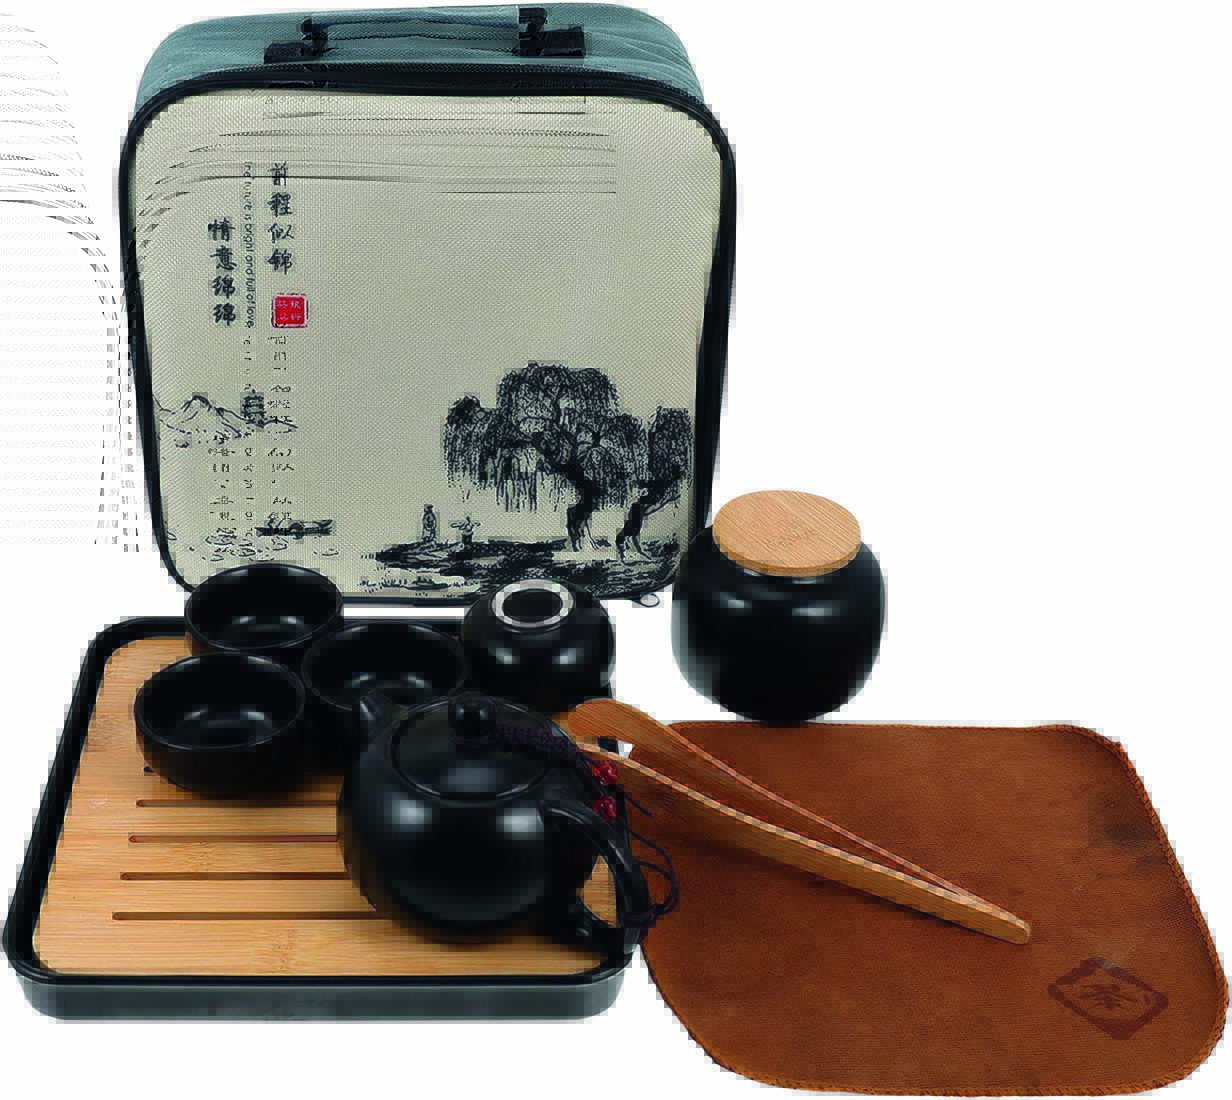 Imagem mostra jogo de chá preto e de madeira